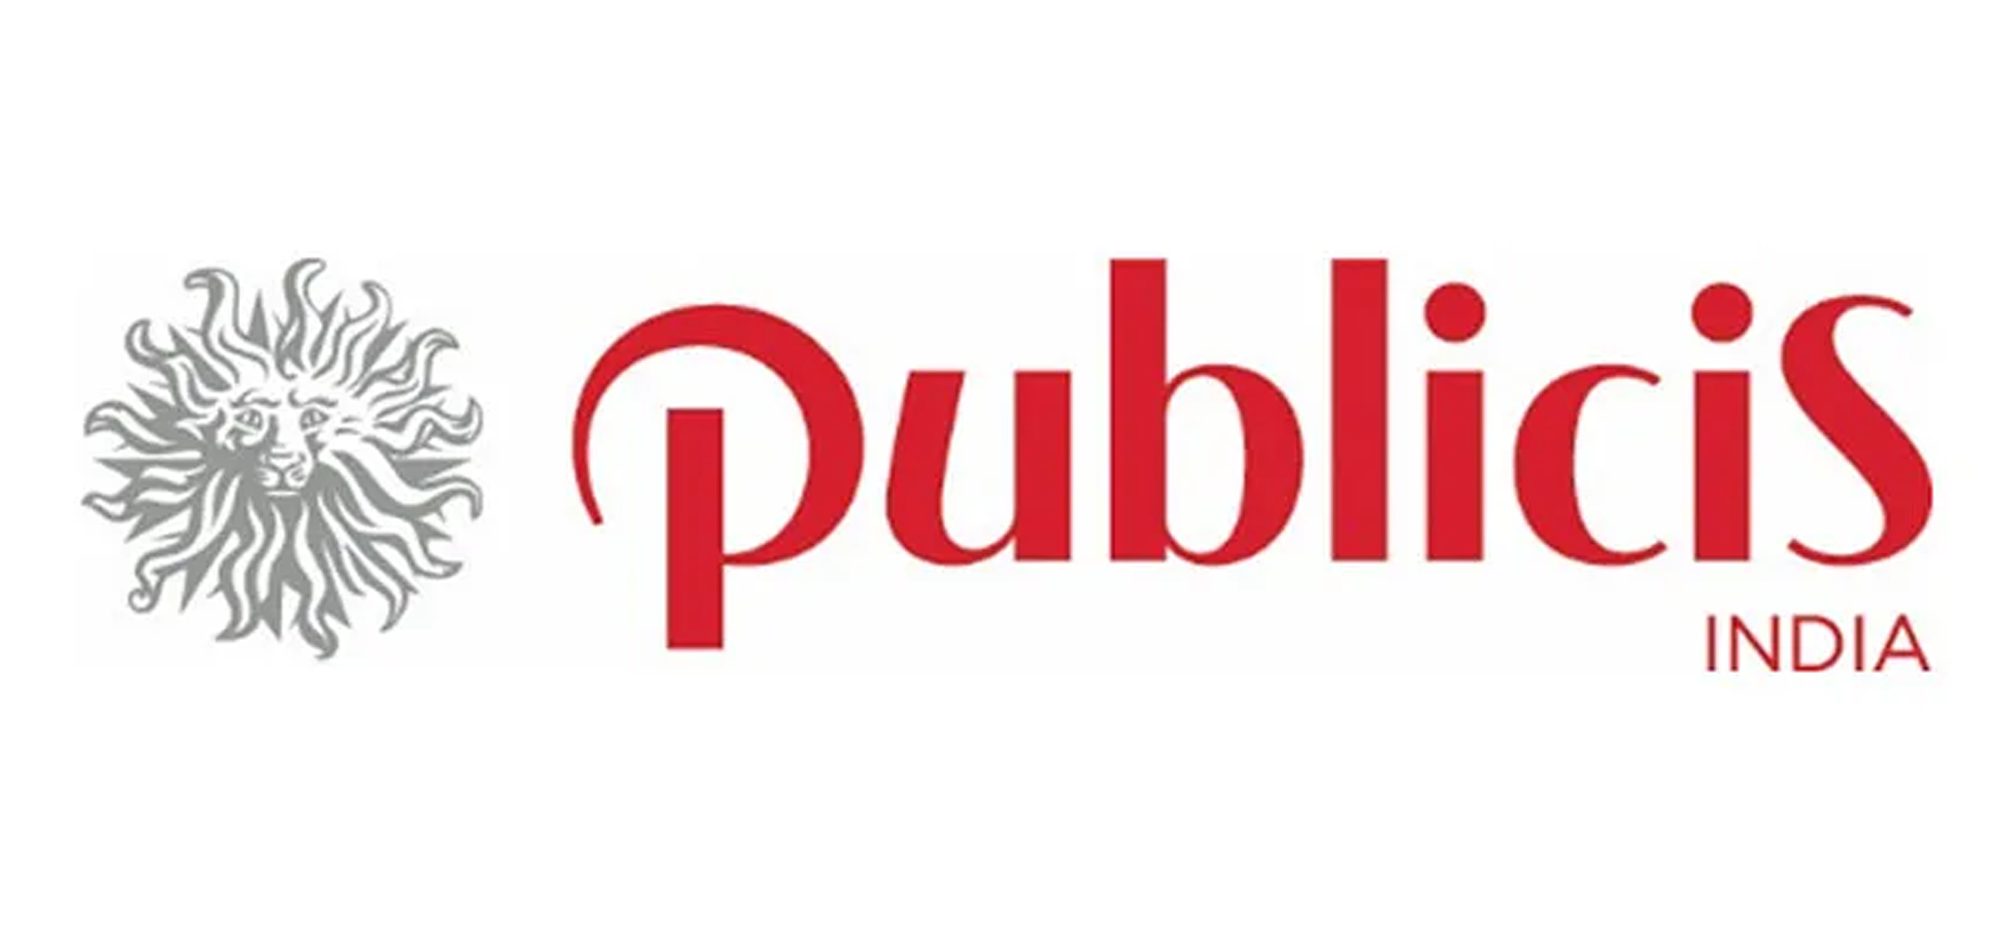 Publicis India